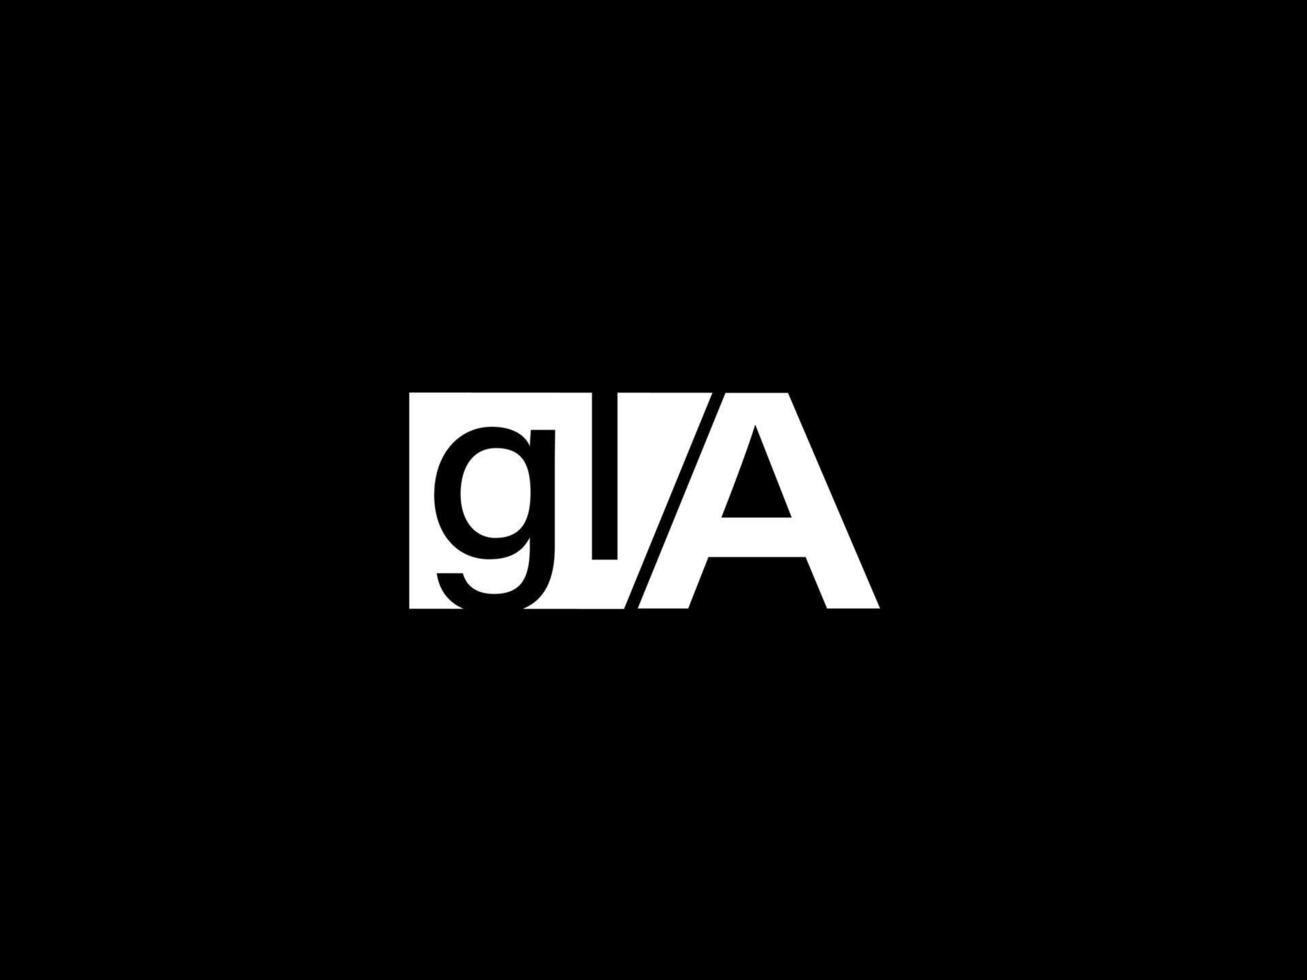 gla Logo und Grafikdesign Vektorgrafiken, Symbole isoliert auf schwarzem Hintergrund vektor